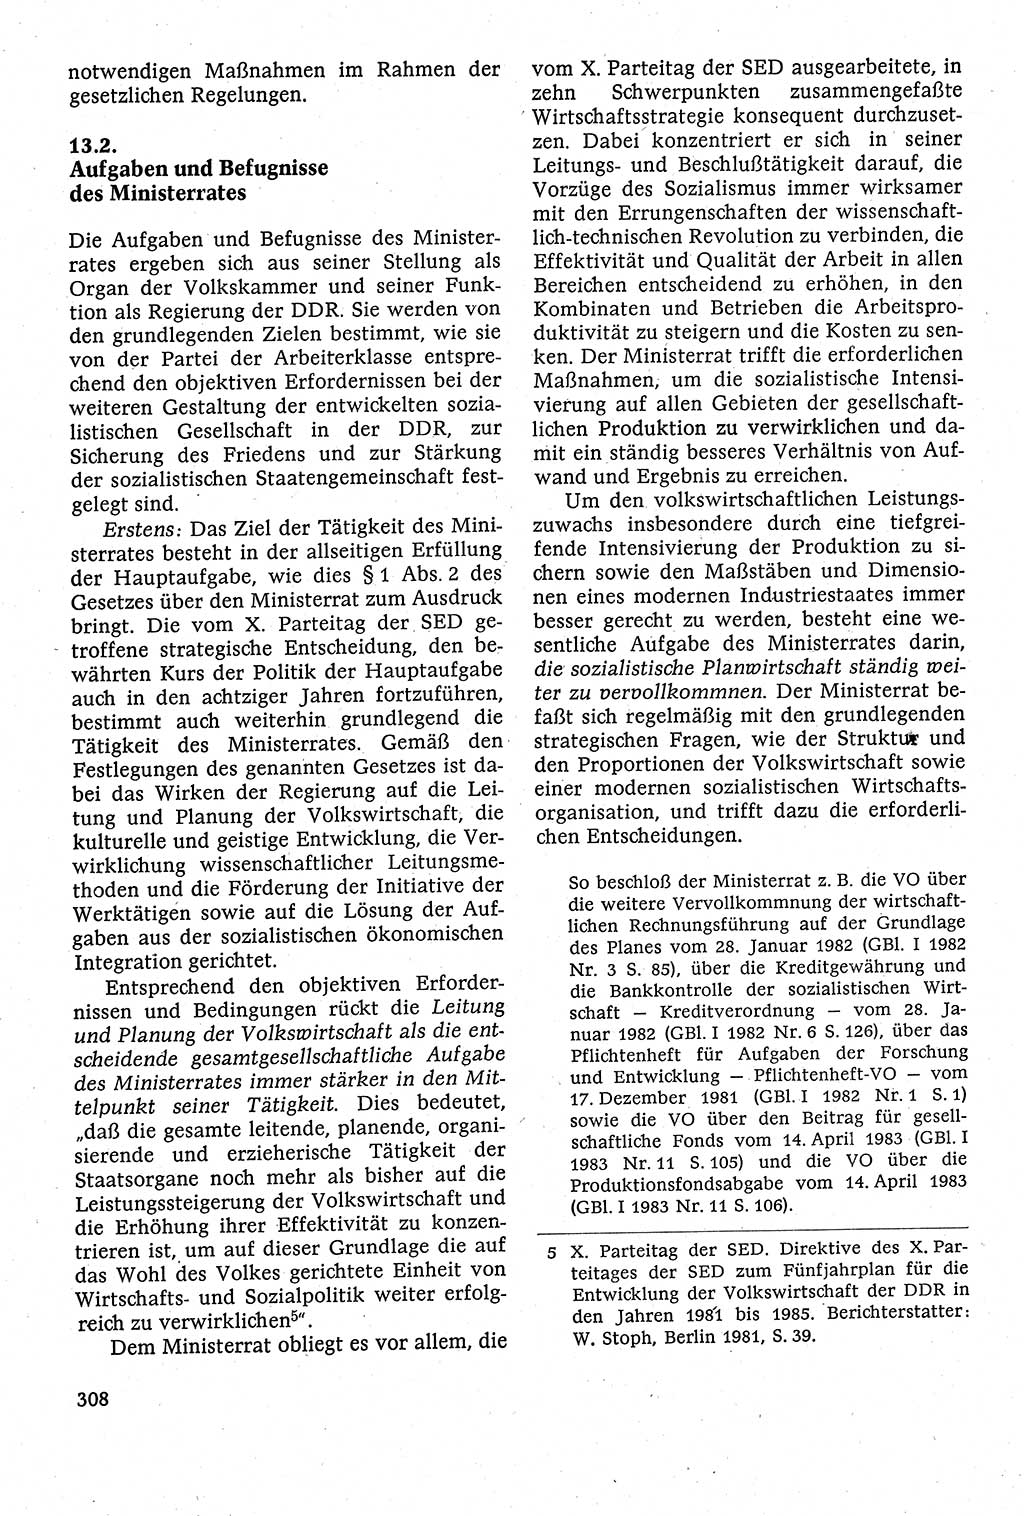 Staatsrecht der DDR [Deutsche Demokratische Republik (DDR)], Lehrbuch 1984, Seite 308 (St.-R. DDR Lb. 1984, S. 308)